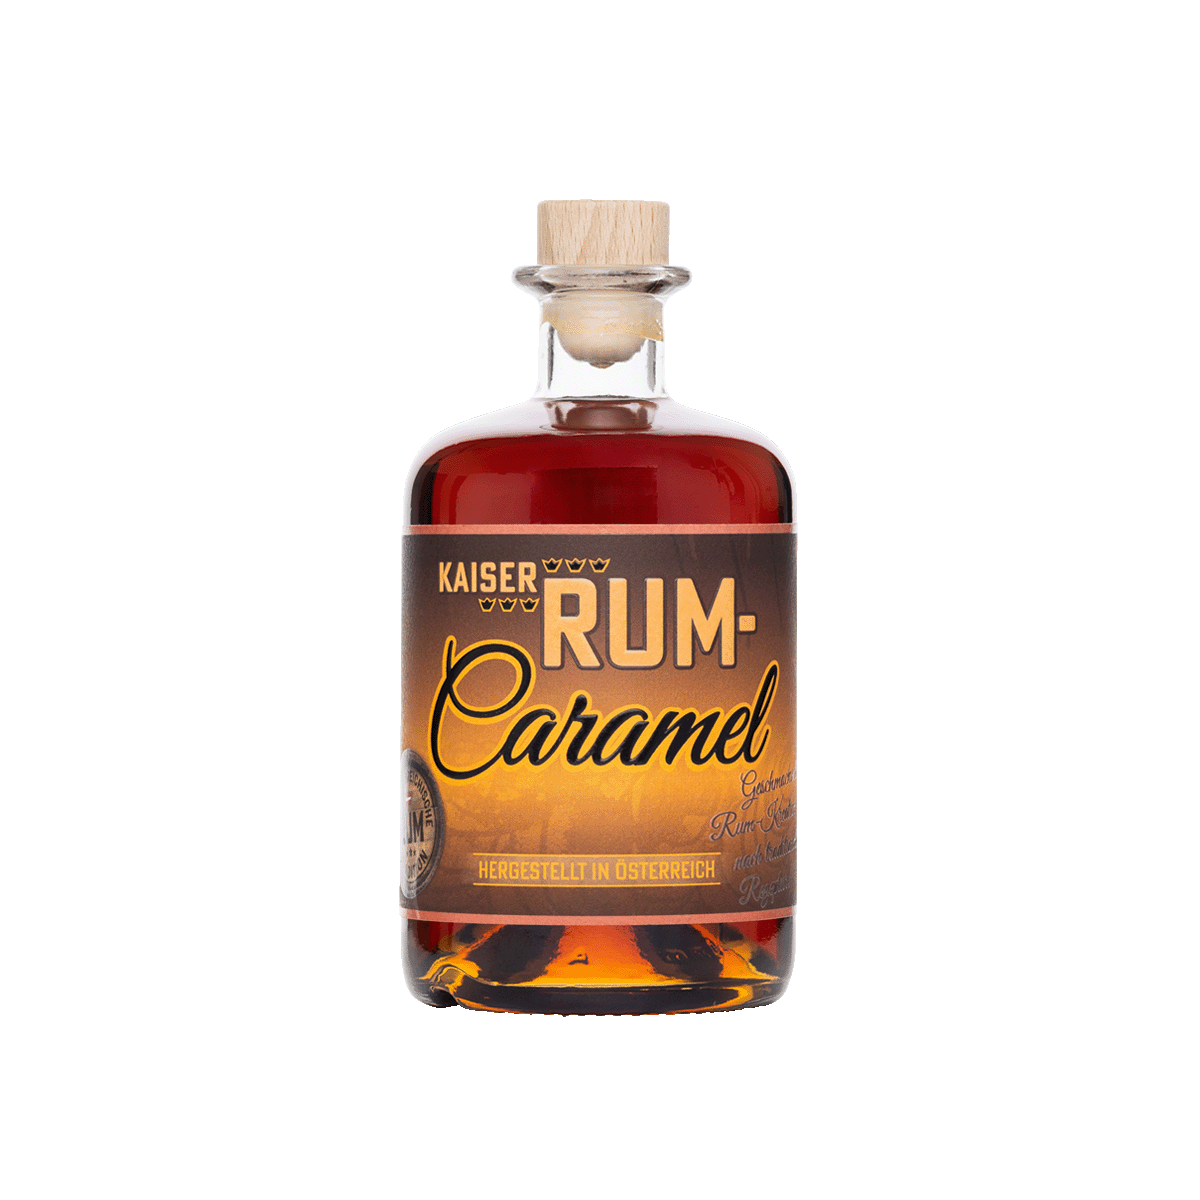 Prinz Schnaps Feinbrennerei Prinz Rum Caramel 40% vol